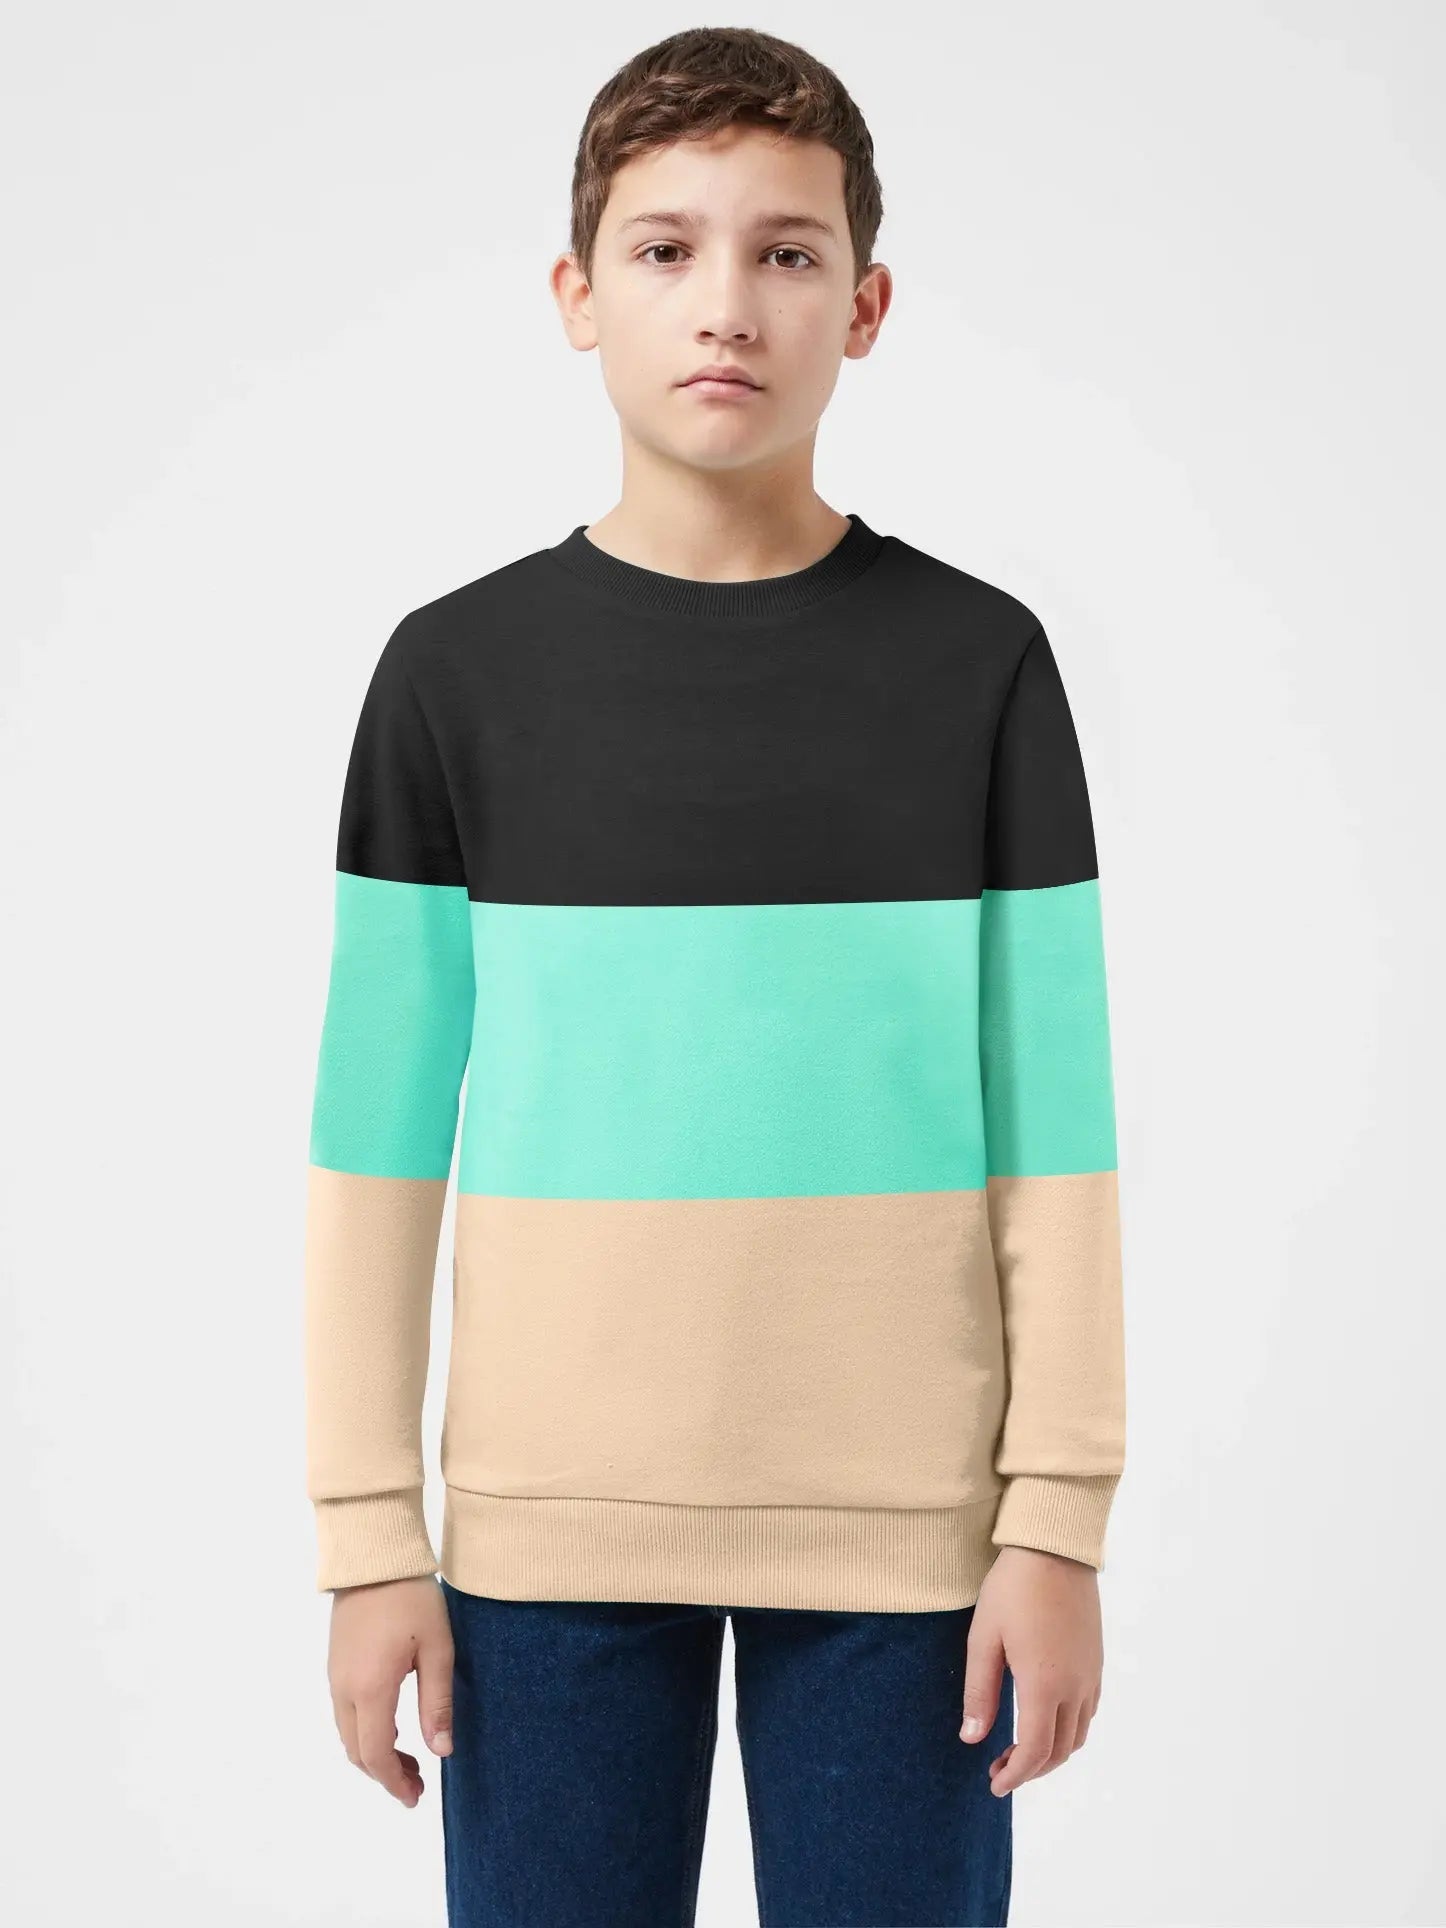 billig produzieren Kids Hoods Page & Sweatshirts - 2 BrandsEgo